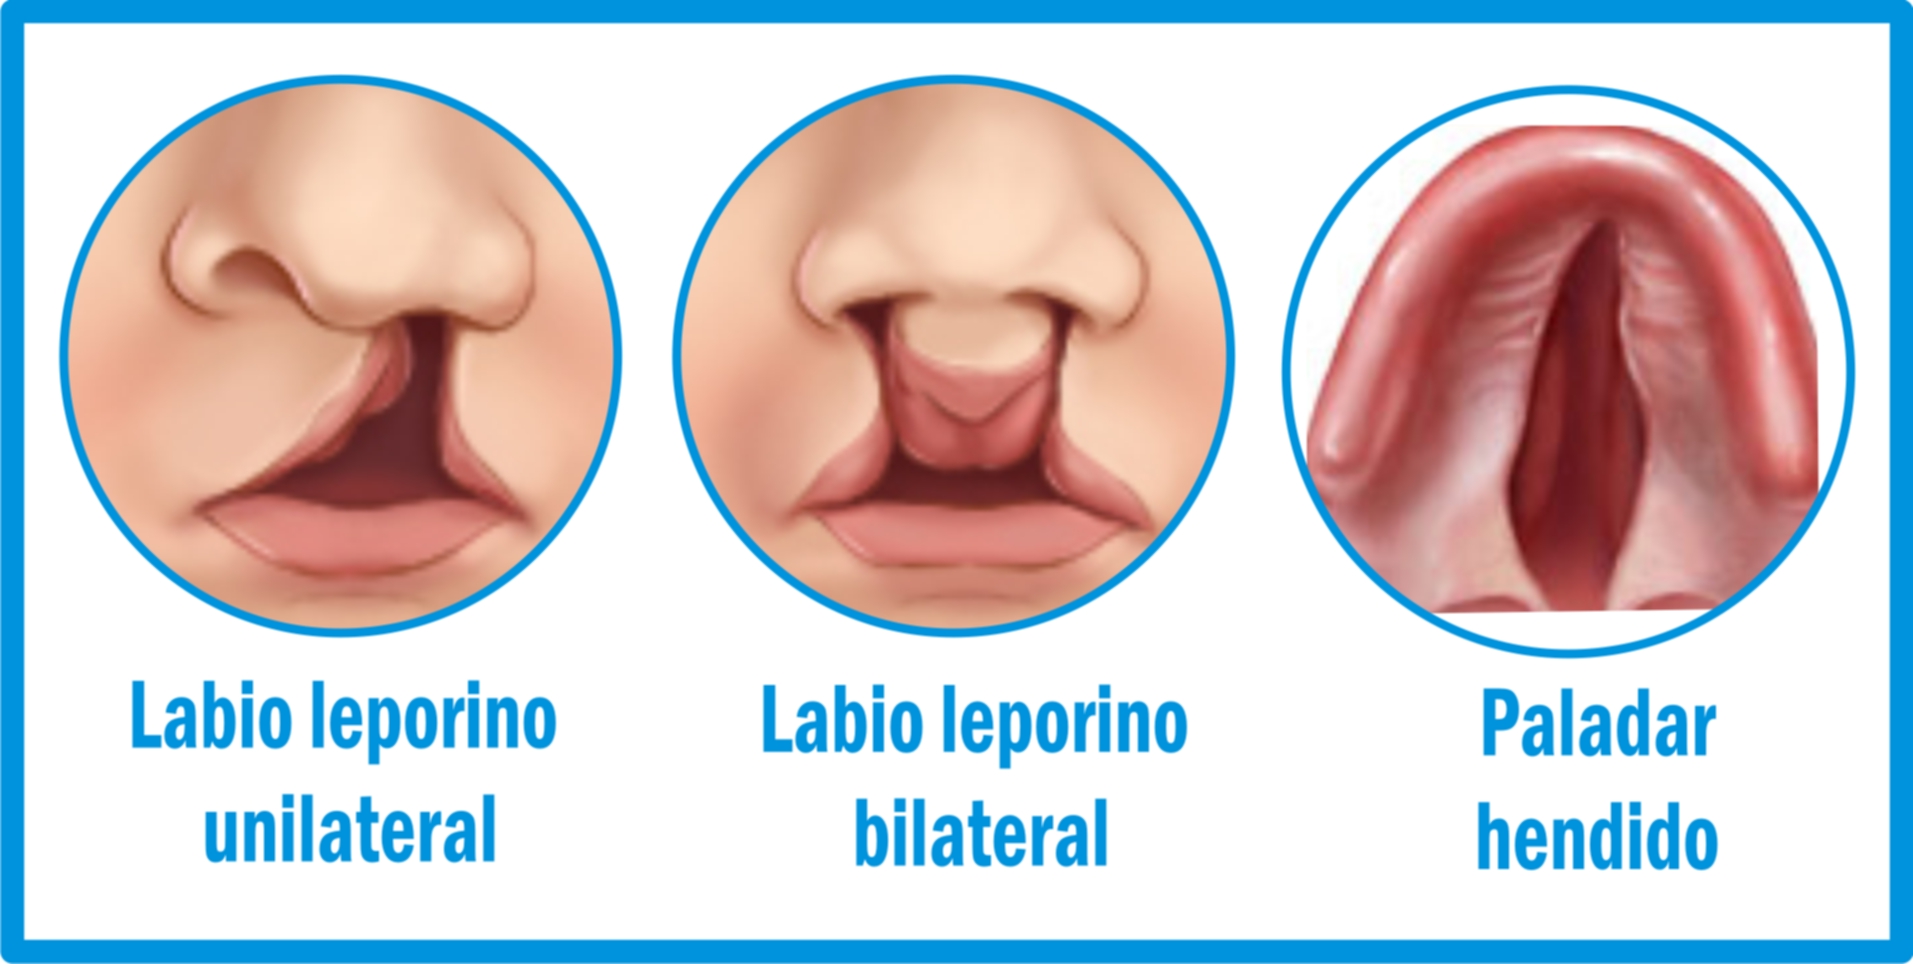 10 Biberones Para Bebés Con Labio Leporino Y Paladar Hendido 3014